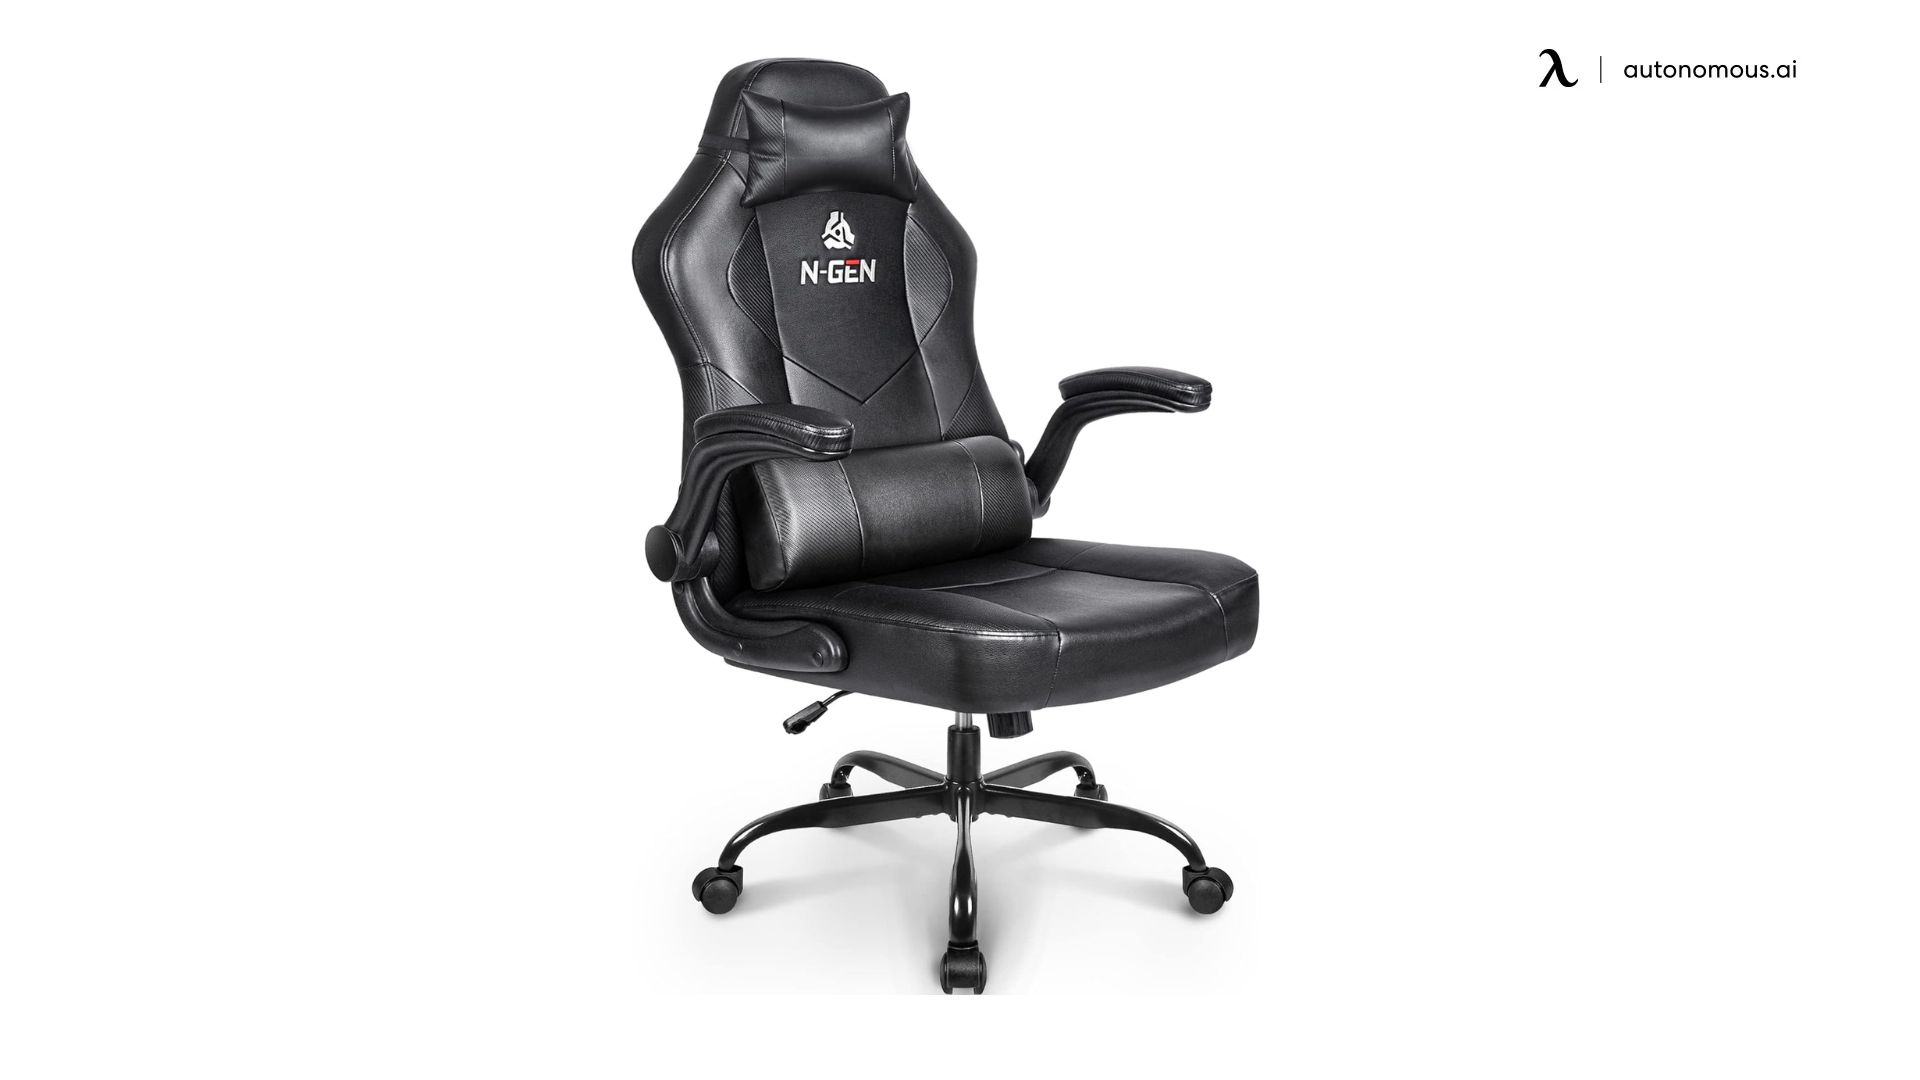 N-GEN Gaming Chair